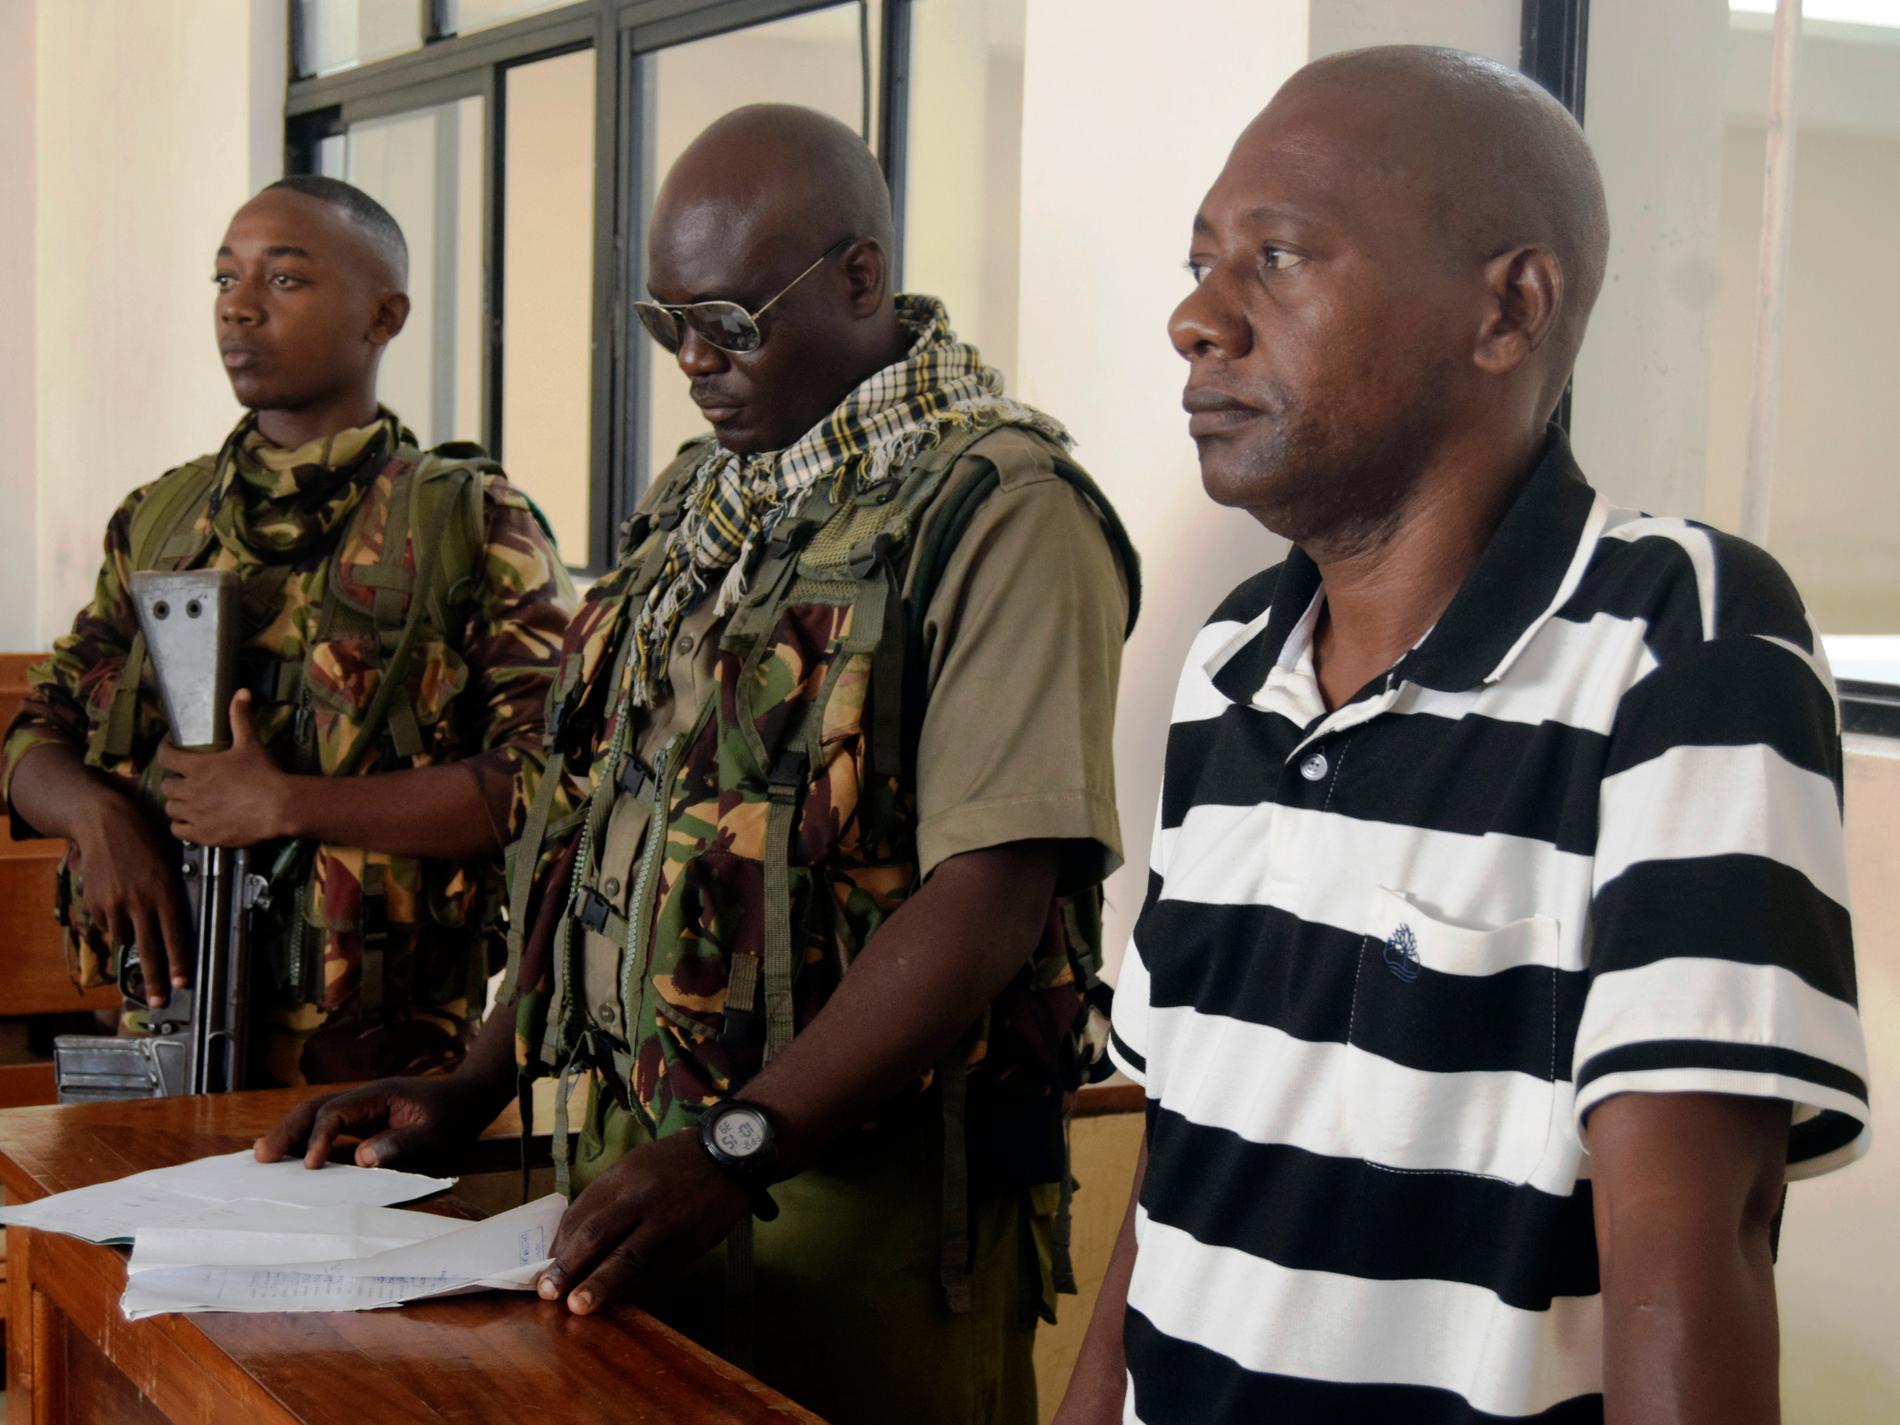 Kenyansk sektledare åtalas för mord och terror